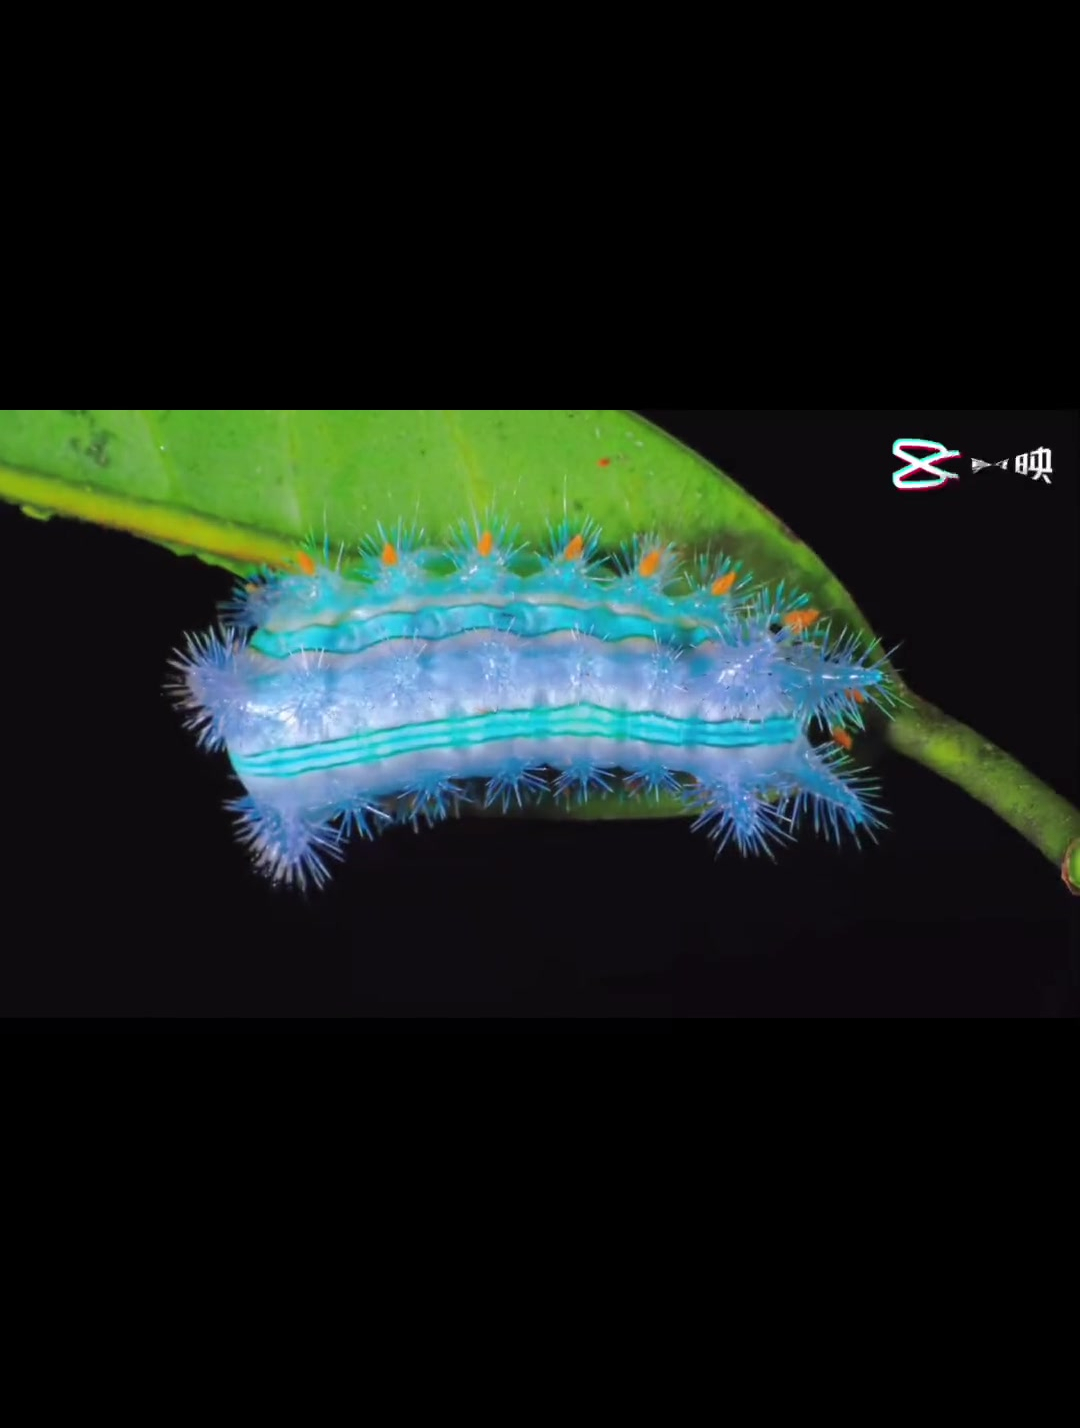 最近拍摄的各种刺蛾幼虫 很漂亮的一类幼虫 刺蛾幼虫 微观世界